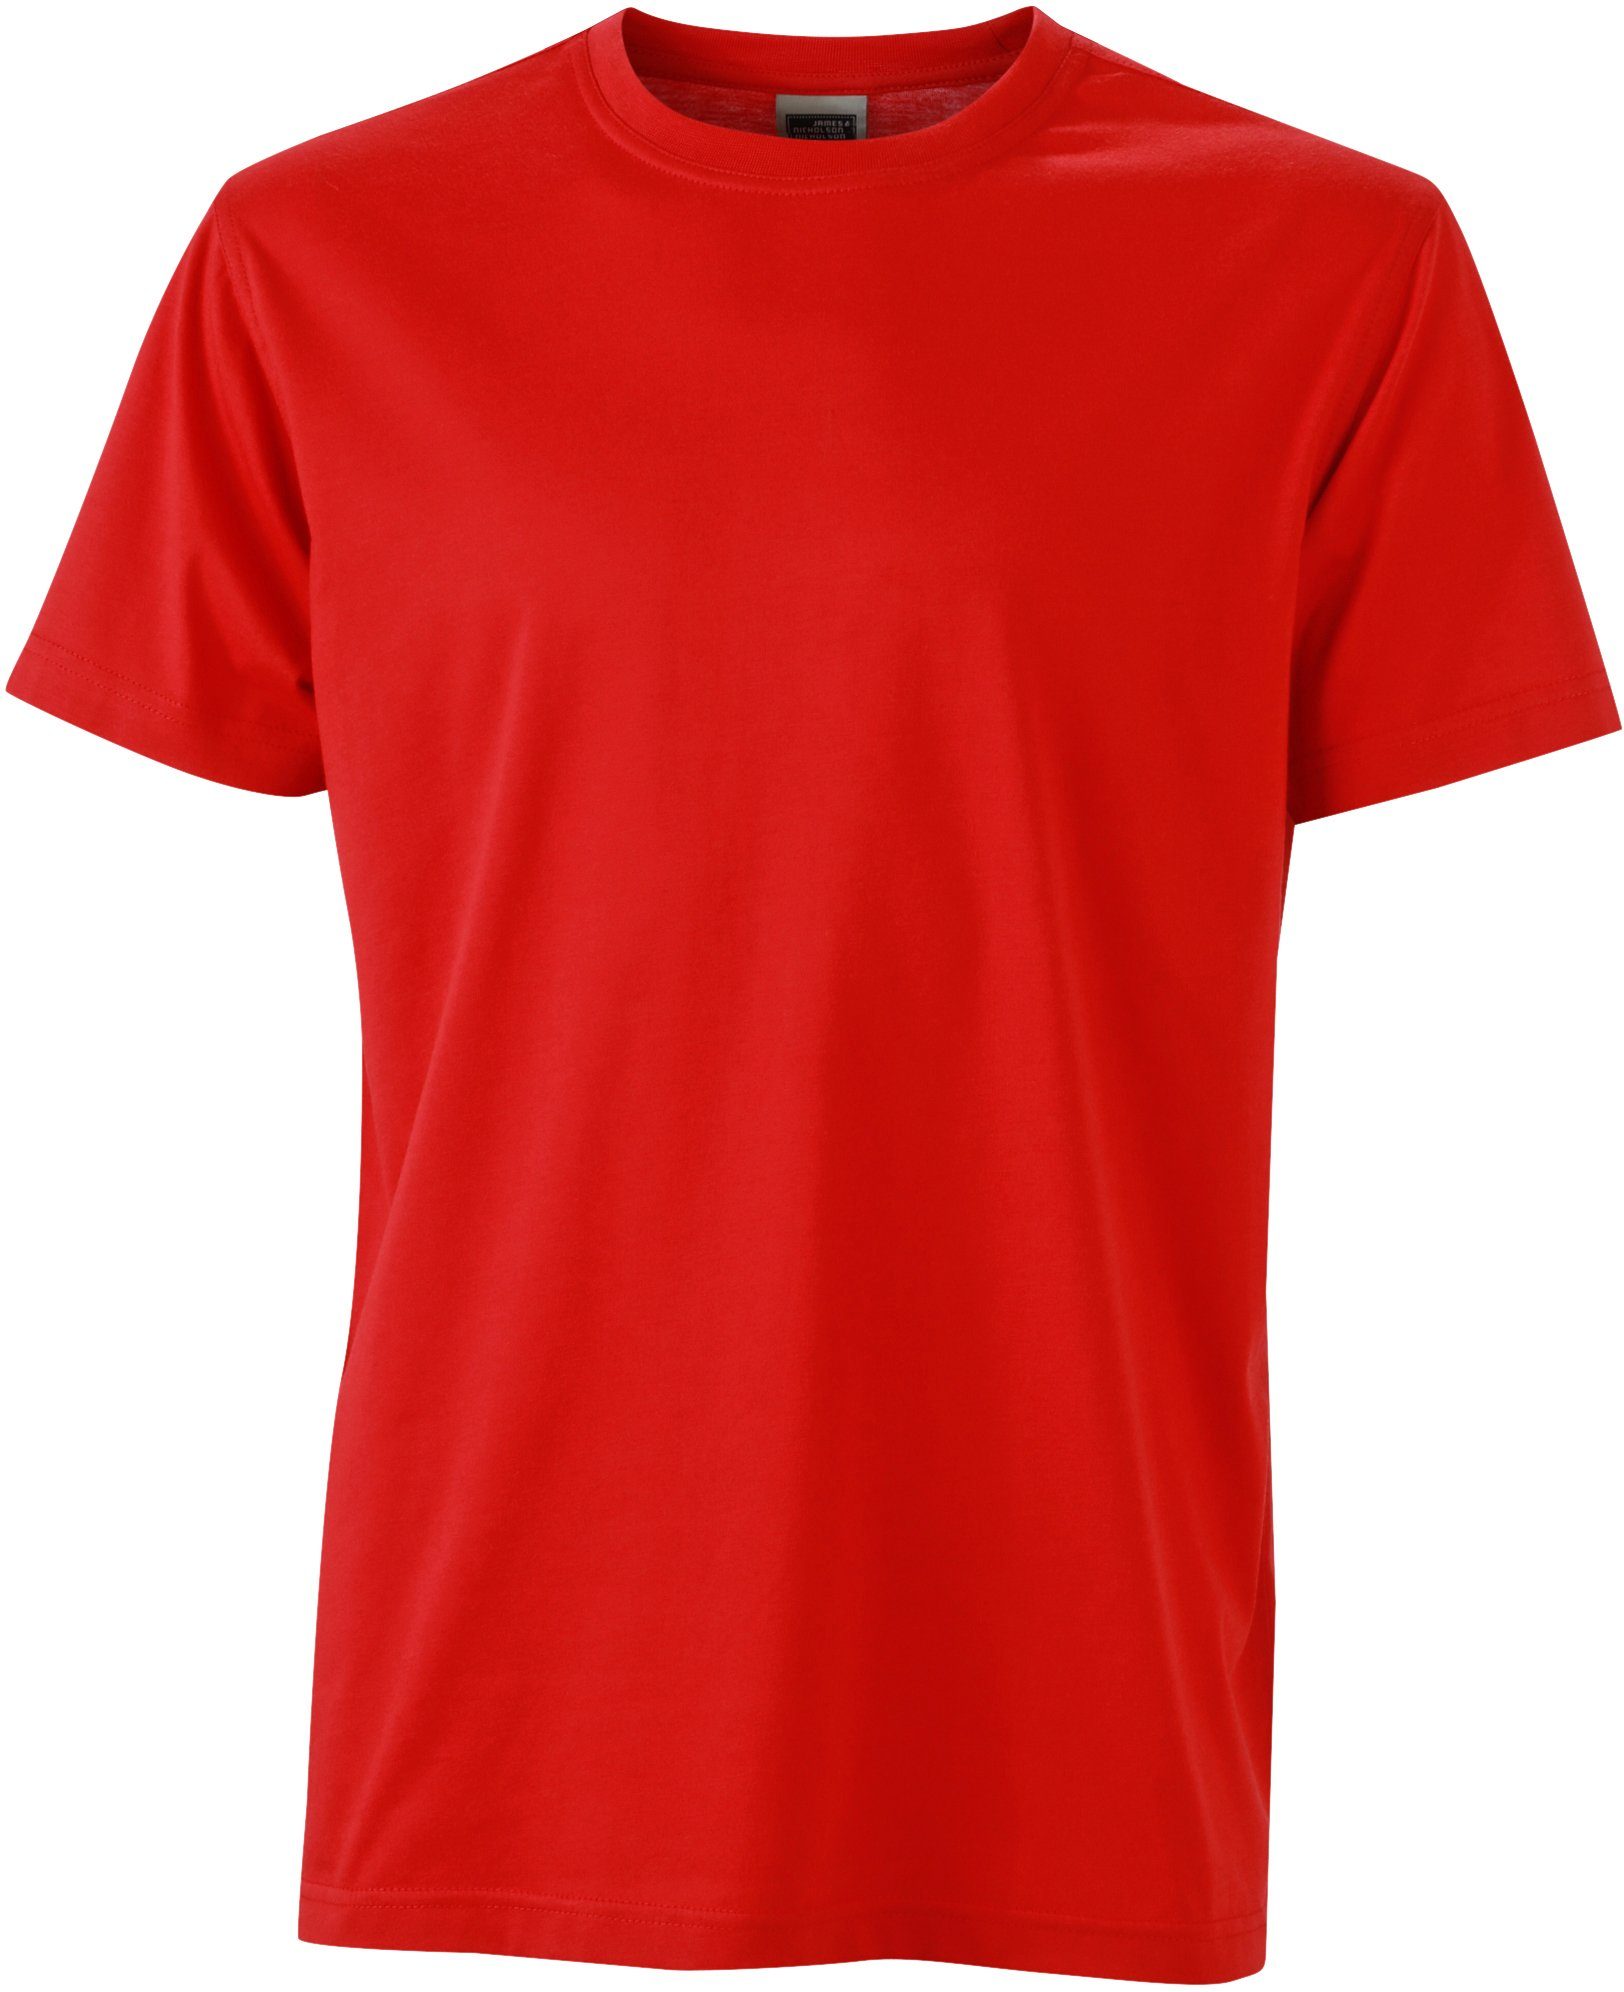 James & Nicholson T-Shirt Workwear T-Shirt FaS50838 auch in großen Größen RED